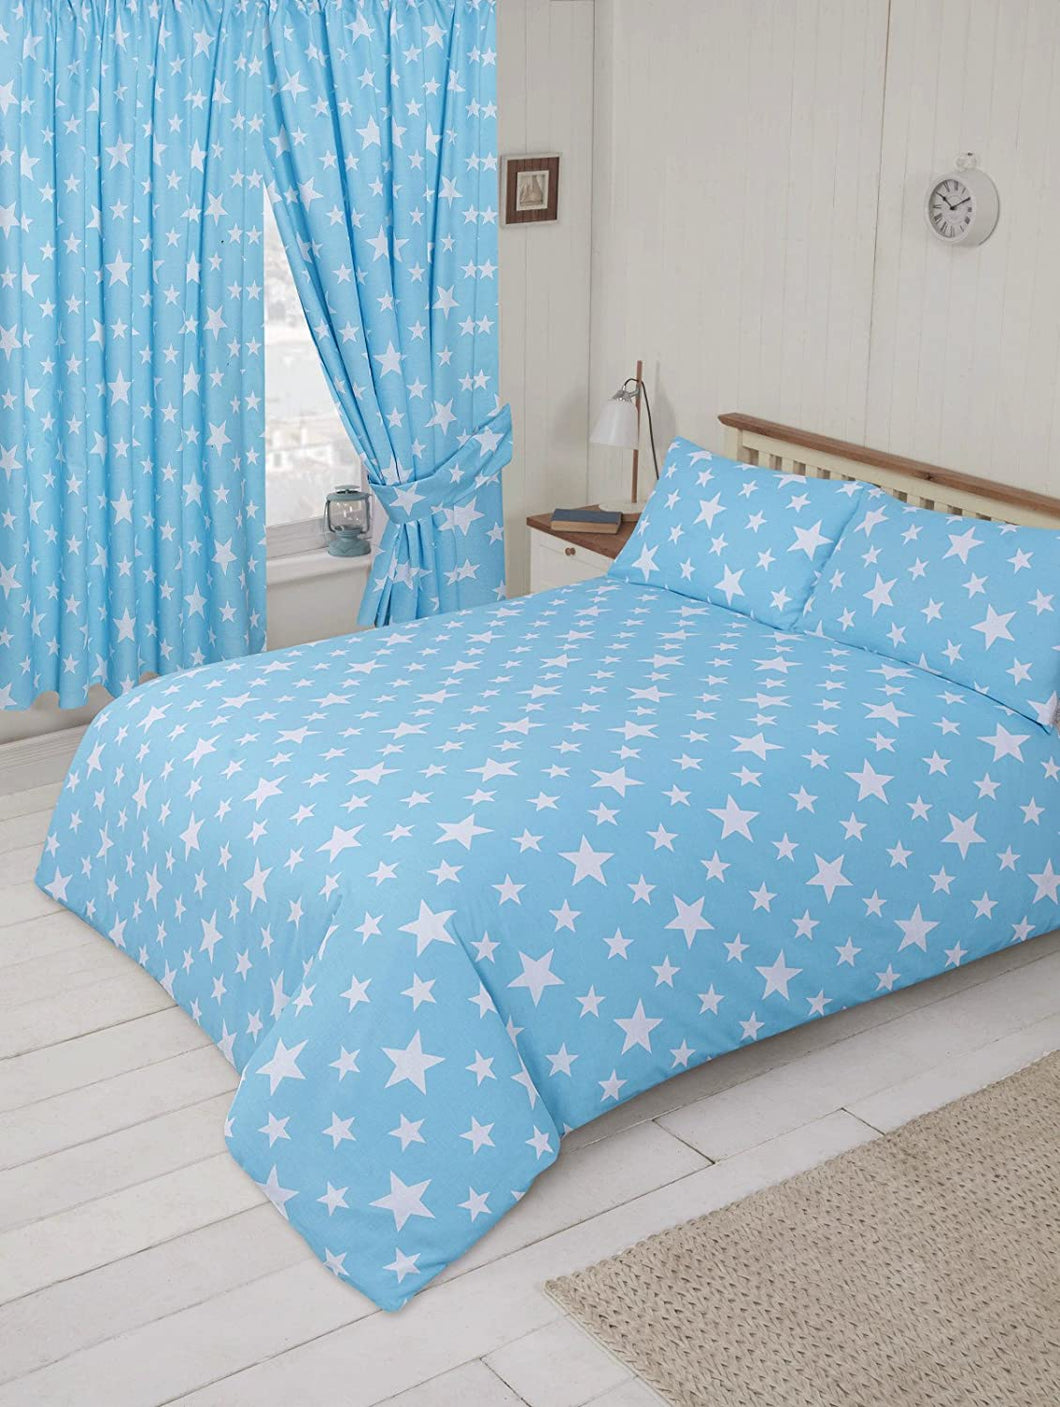 Double Bed Duvet Cover Set Stars Light Blue White